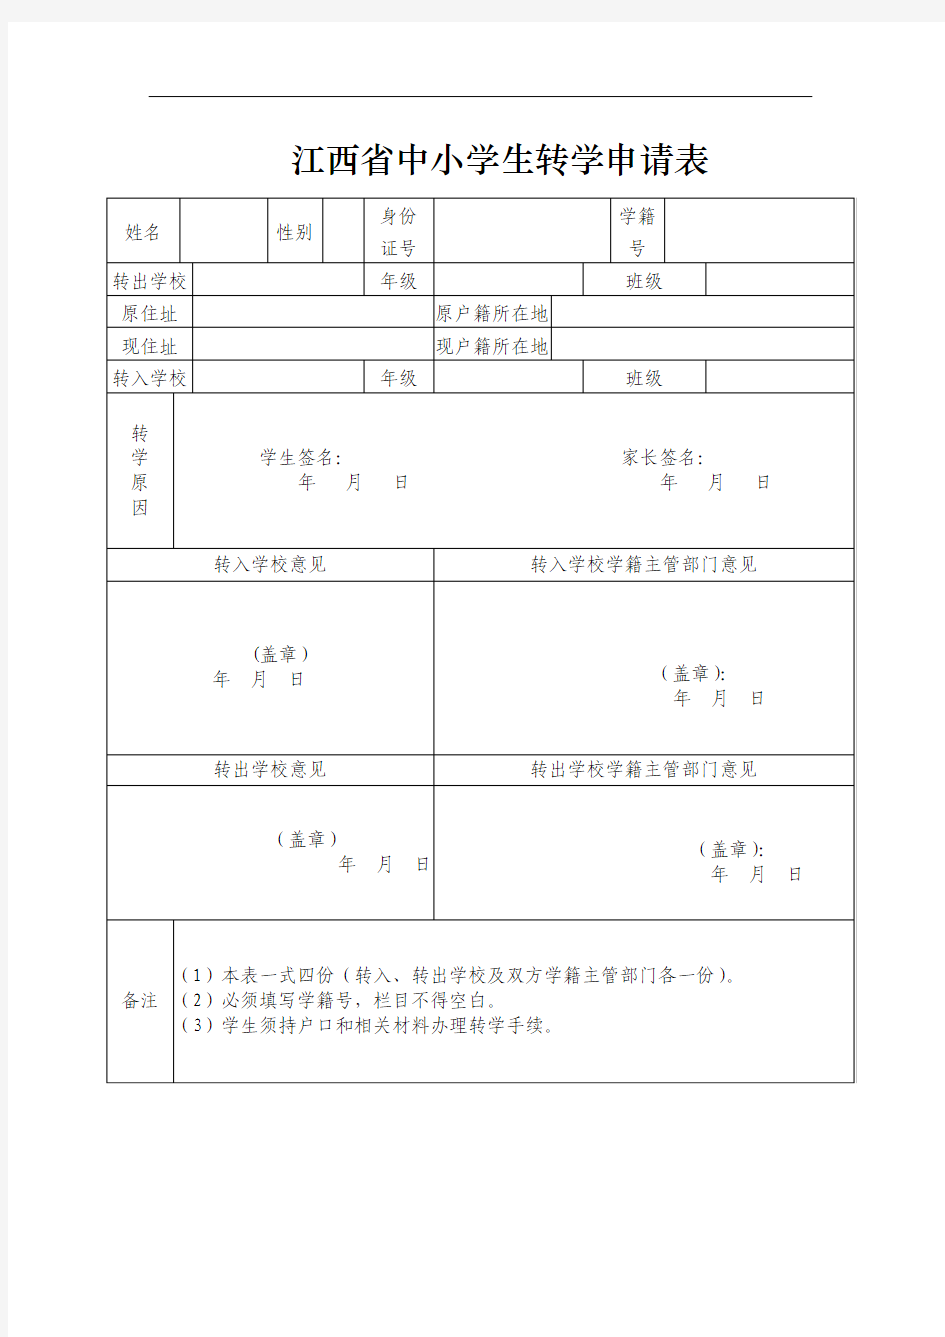 江西省中小学生转学申请表(修改版)